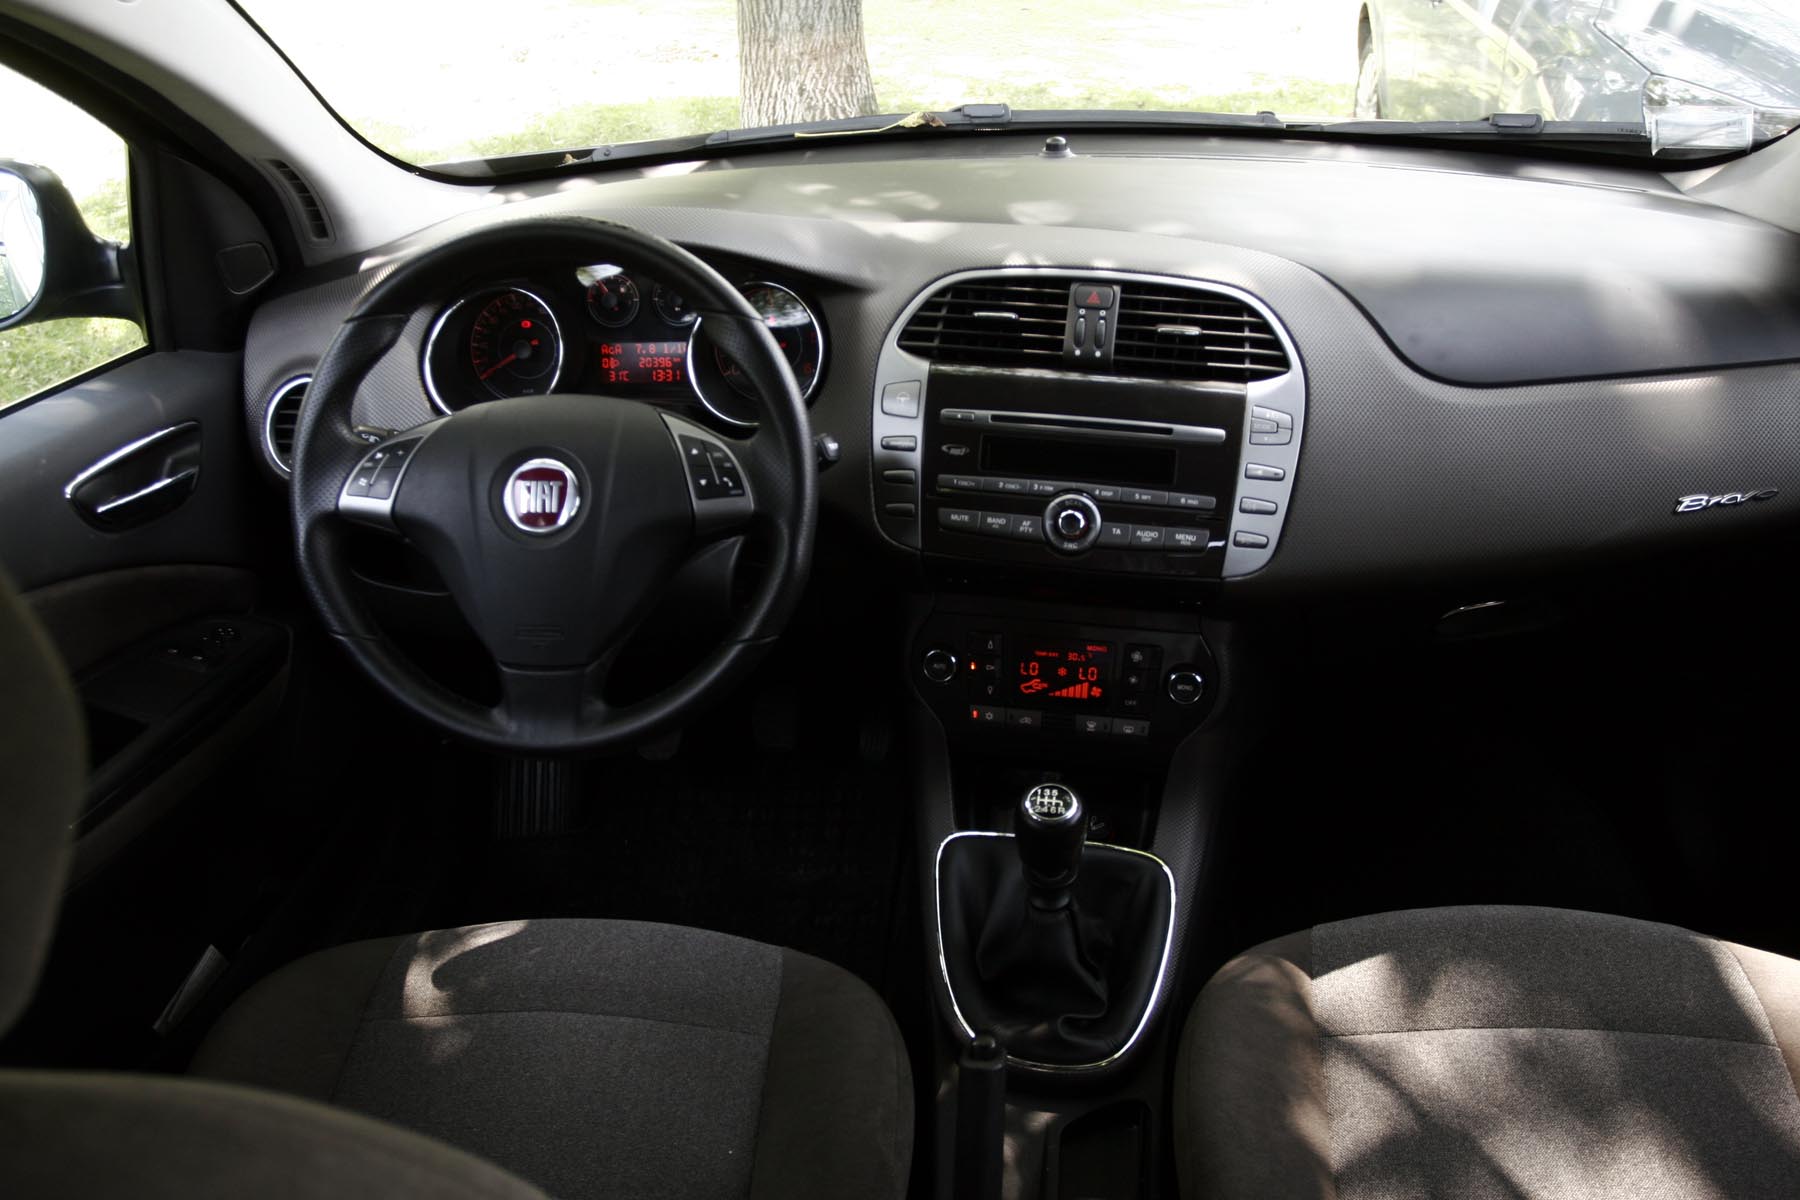 Fiat Bravo - interior orientat spre sofer